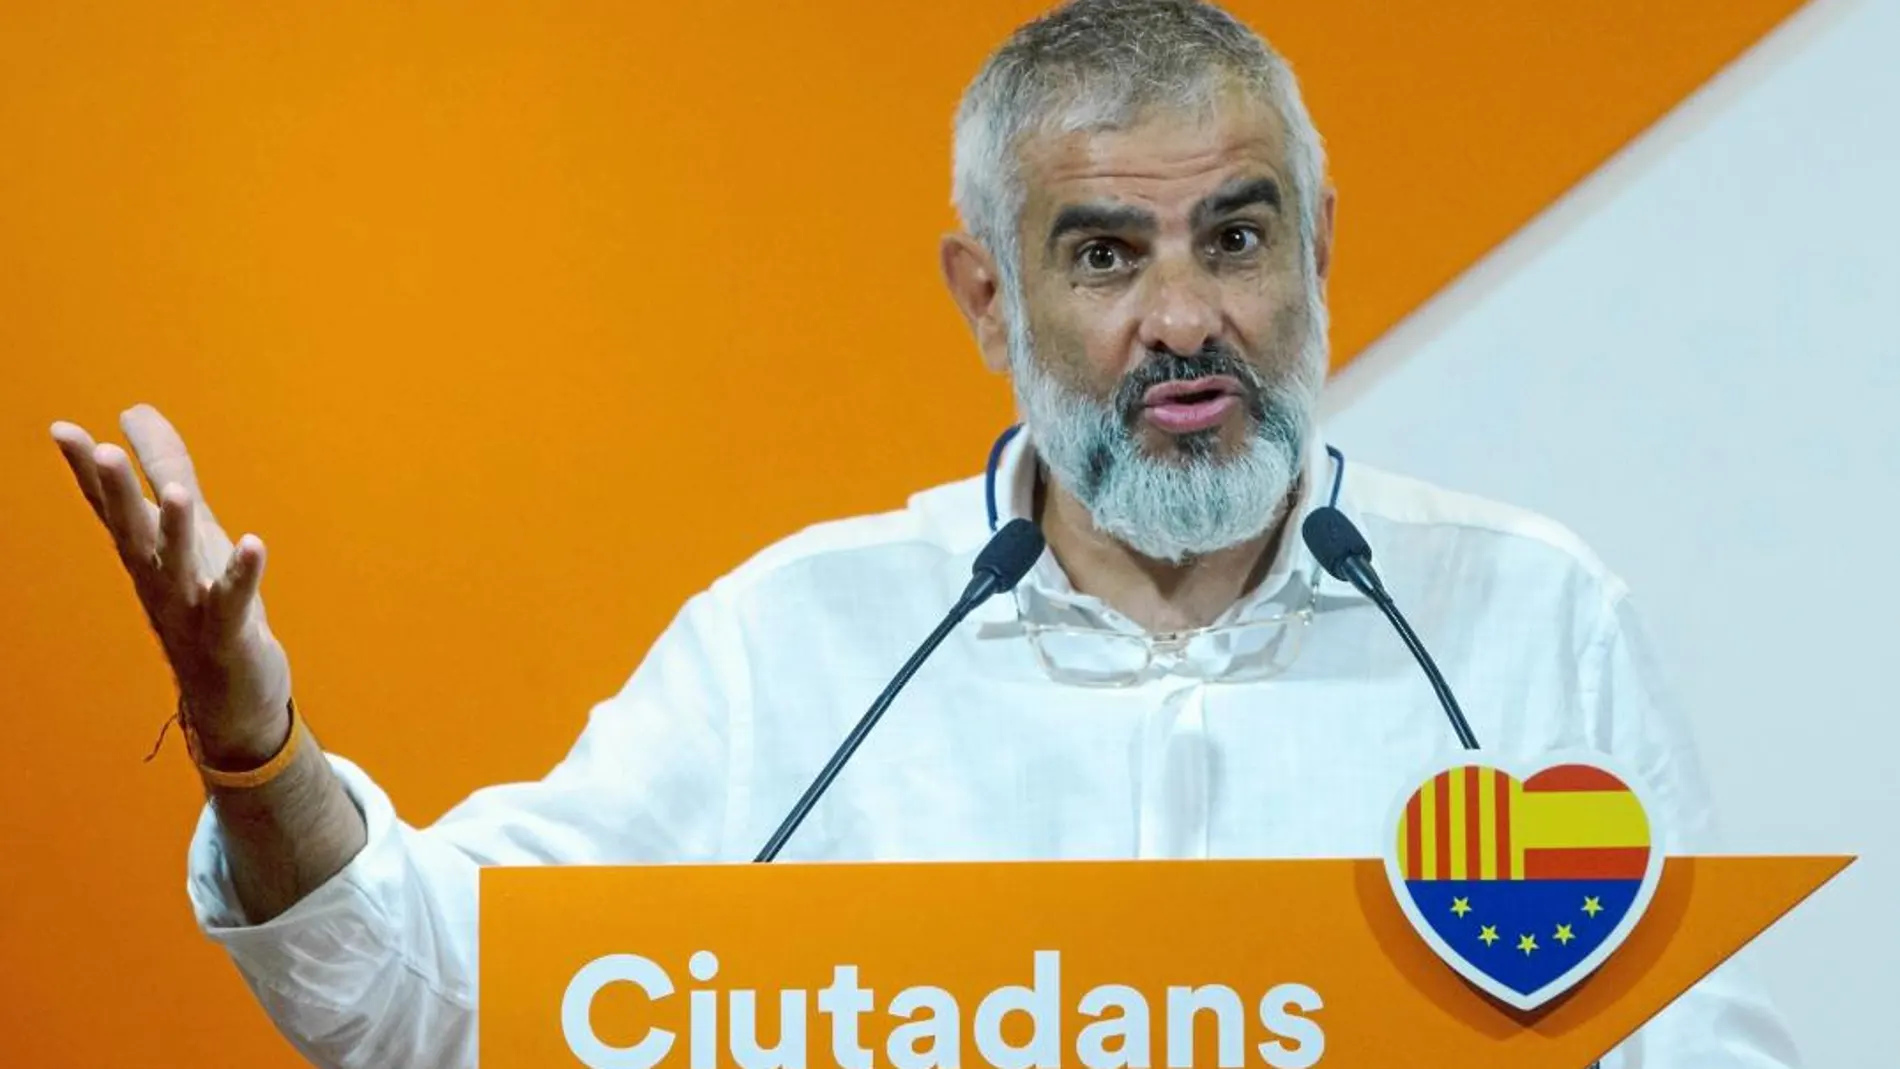 El dirigente de Ciudadanos, Carlos Carrizosa, ayer en rueda de prensa en la sede del partido en Barcelona / Foto: Efe